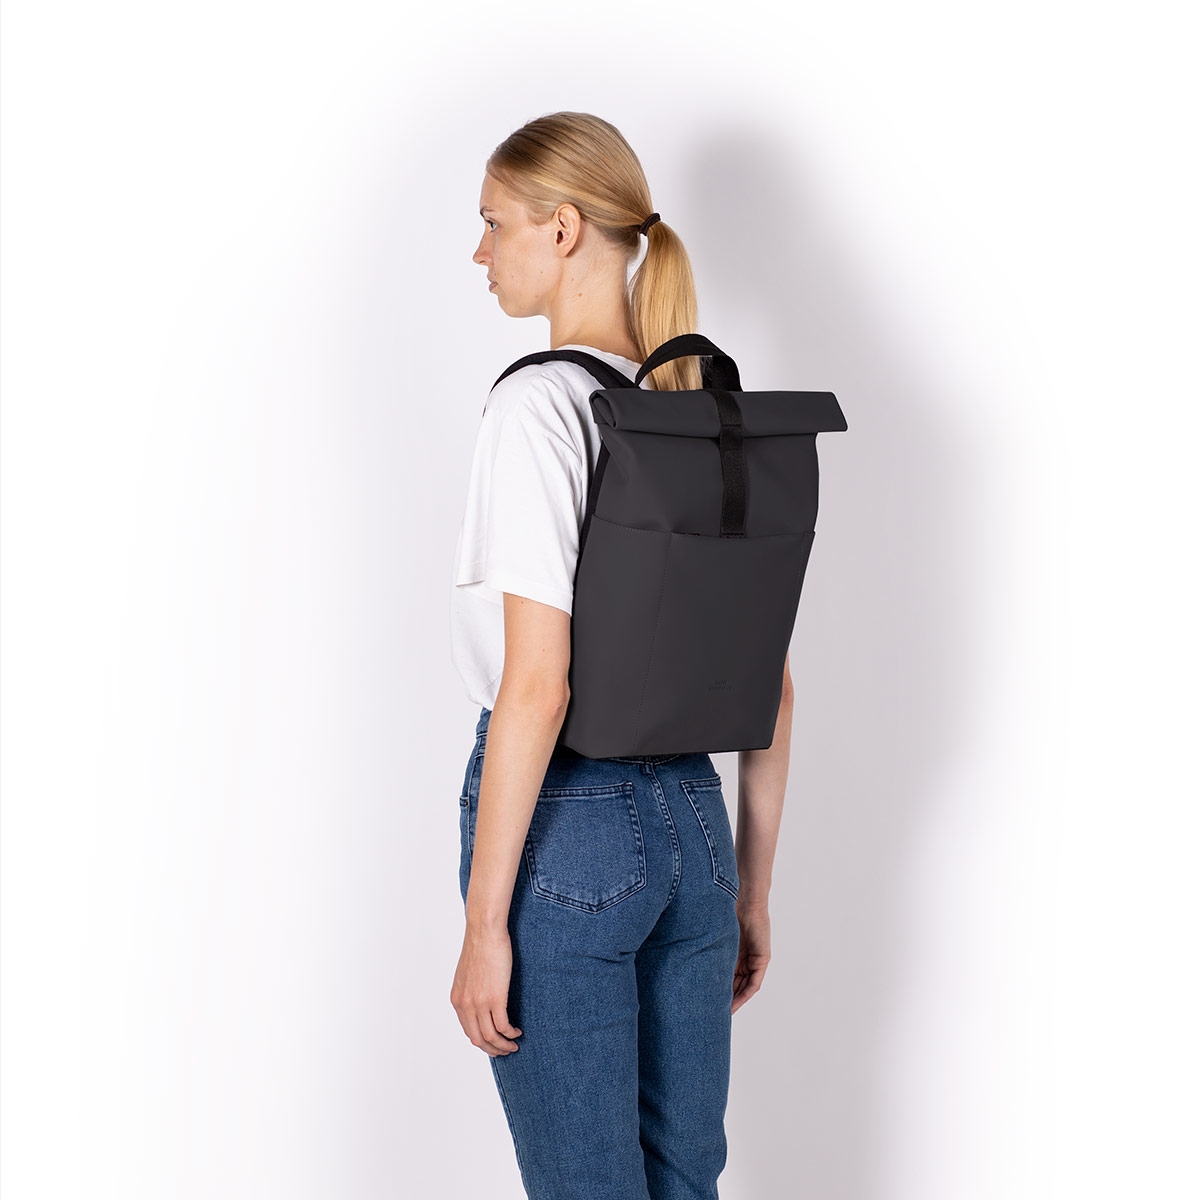 Ucon Acrobat - Backpack Minimal μαύρο αδιάβροχο - Black Lotus_1